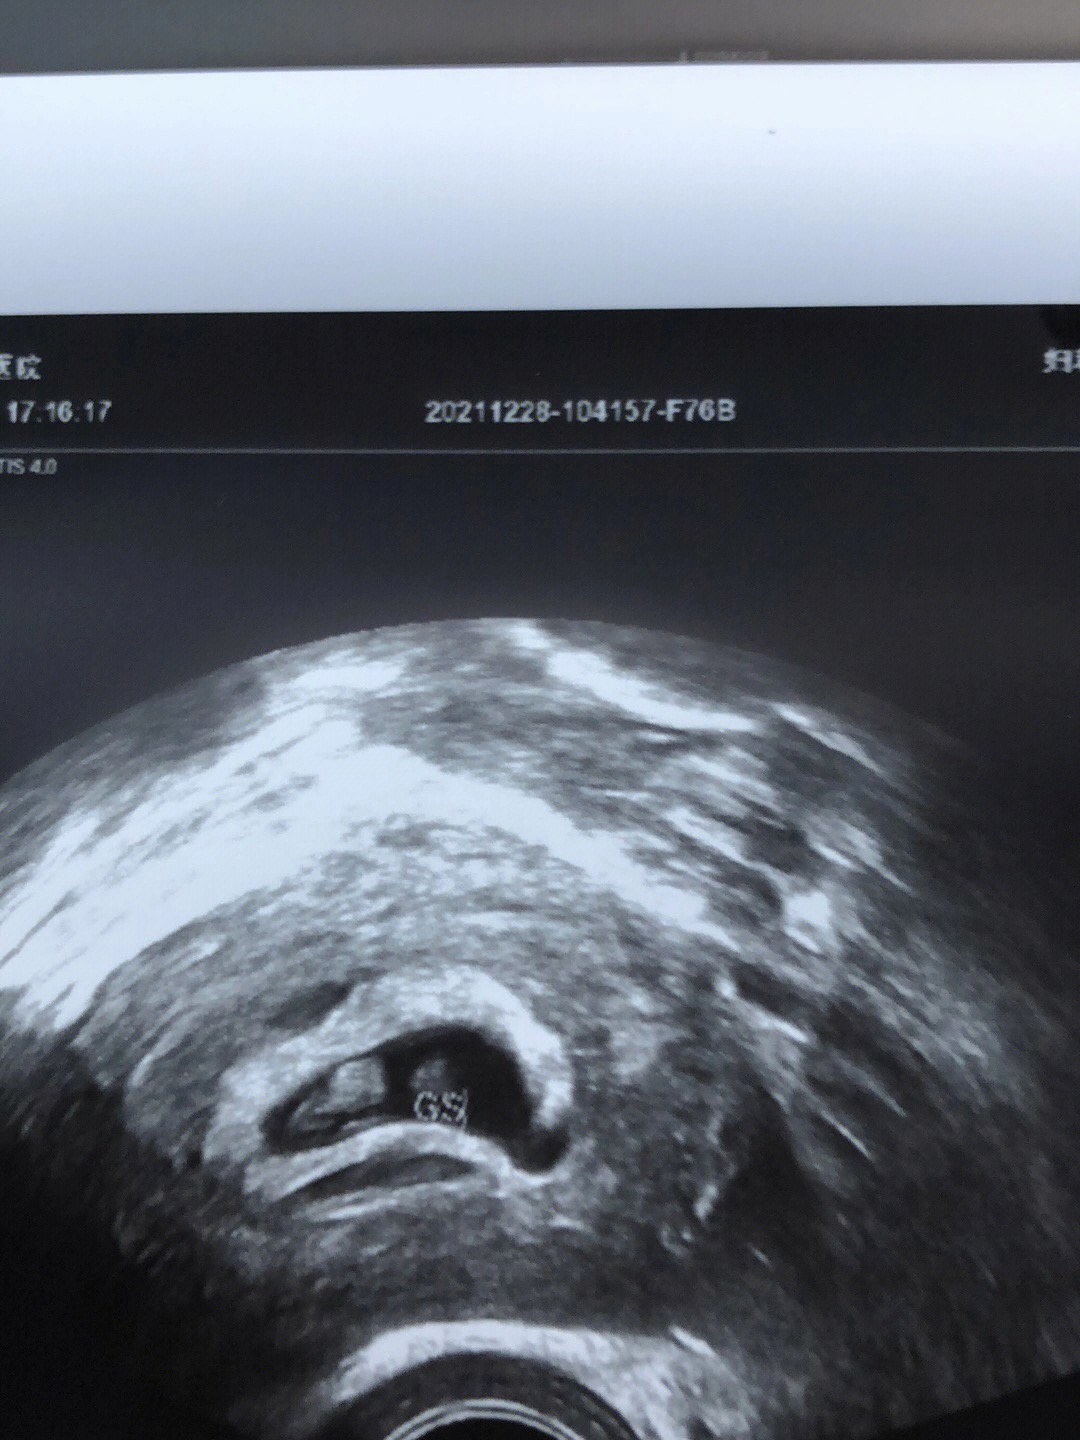 怀孕7周孕囊大小图片图片